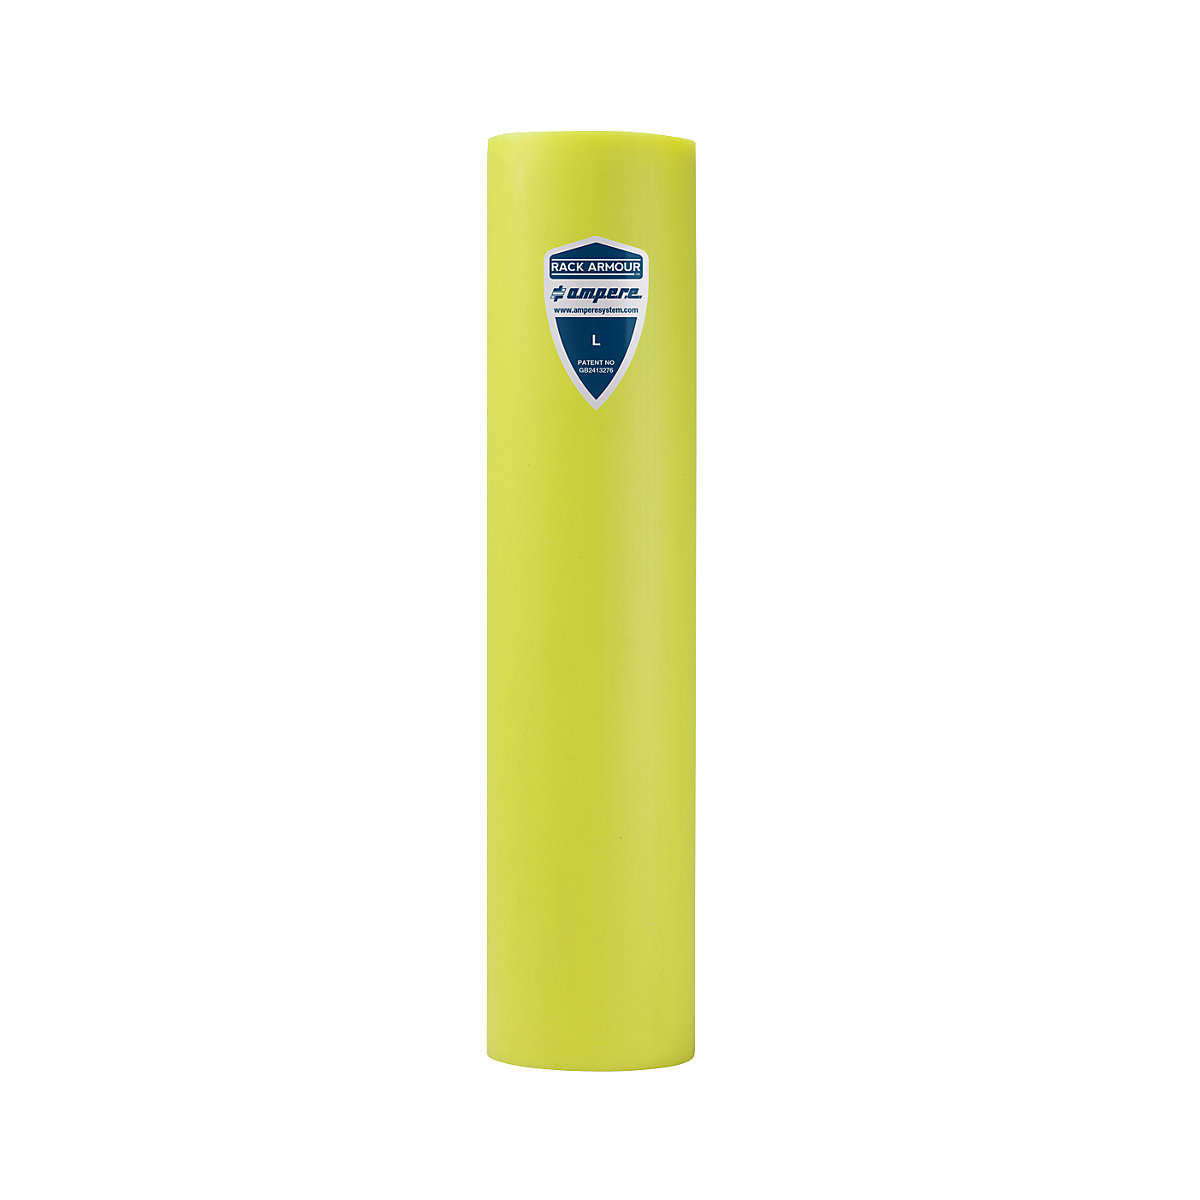 Regalanfahrschutz Ampere, aus Kunststoff, gelb, Regalständerbreite 101 – 110 mm